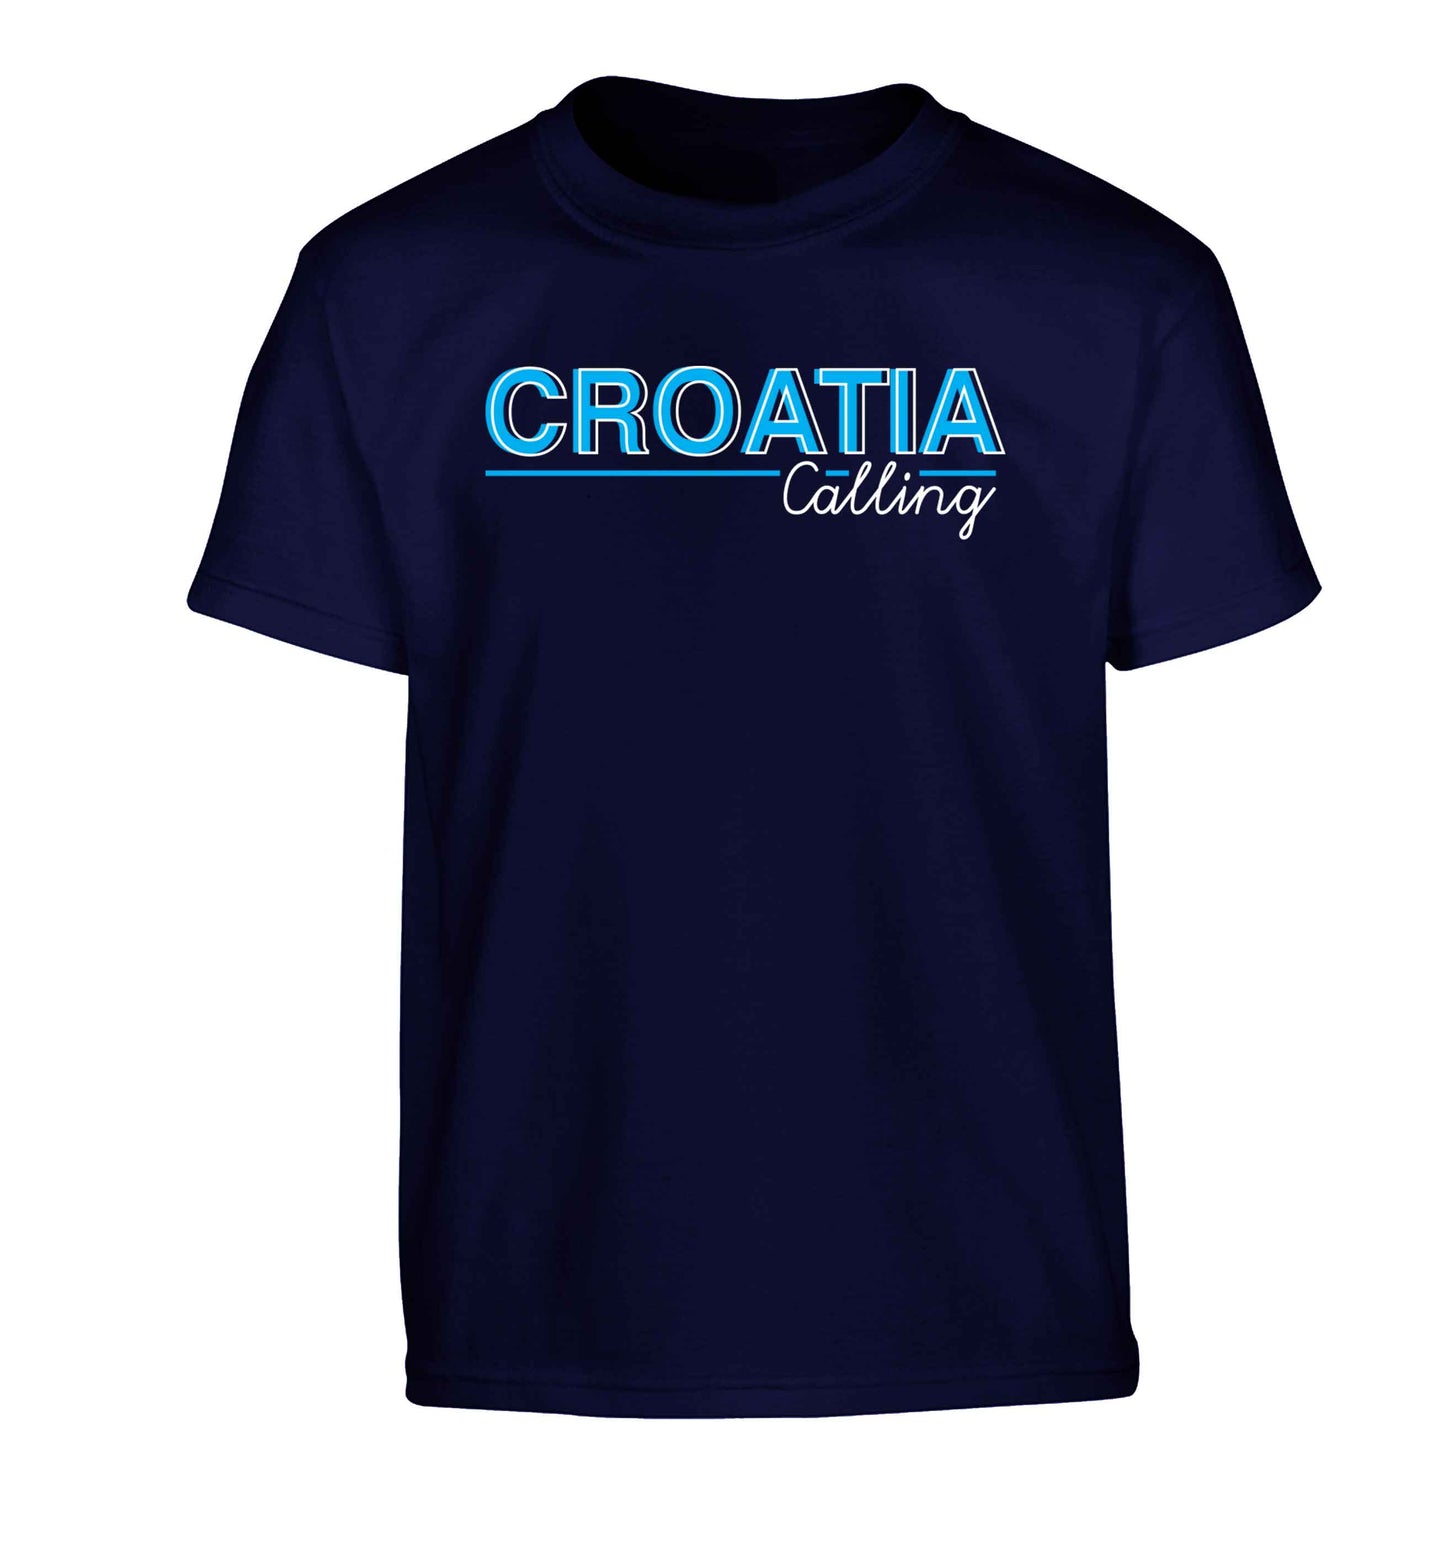 Croatia calling Children's navy Tshirt 12-13 Years